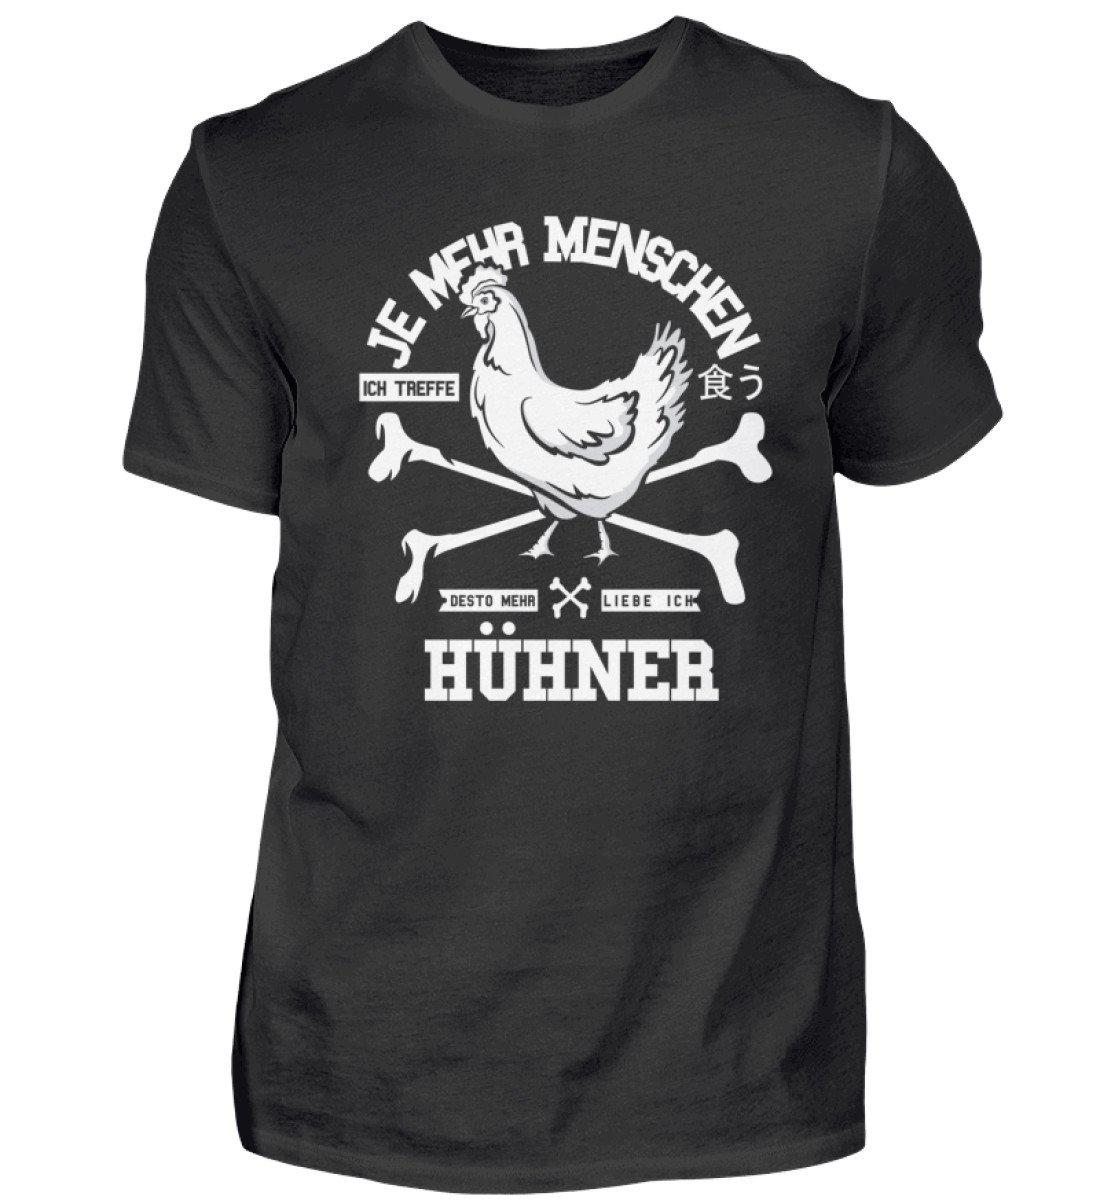 Desto mehr liebe ich Hühner · Herren T-Shirt-Herren Basic T-Shirt-Black-S-Agrarstarz